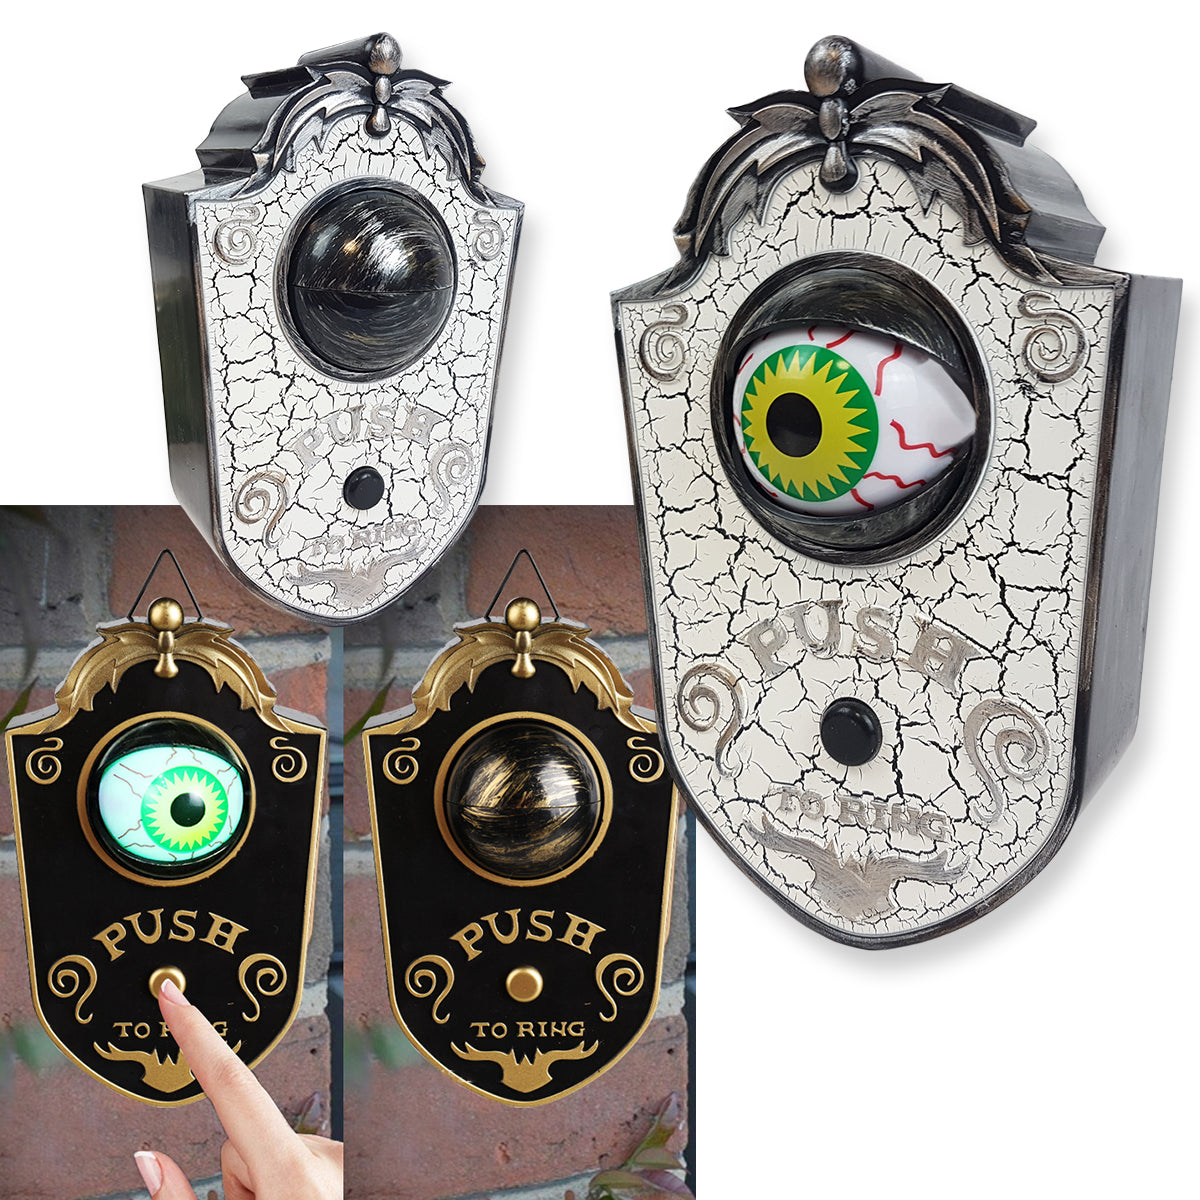 Spooky Jime zvono sa pokretnim okom - EuroShop